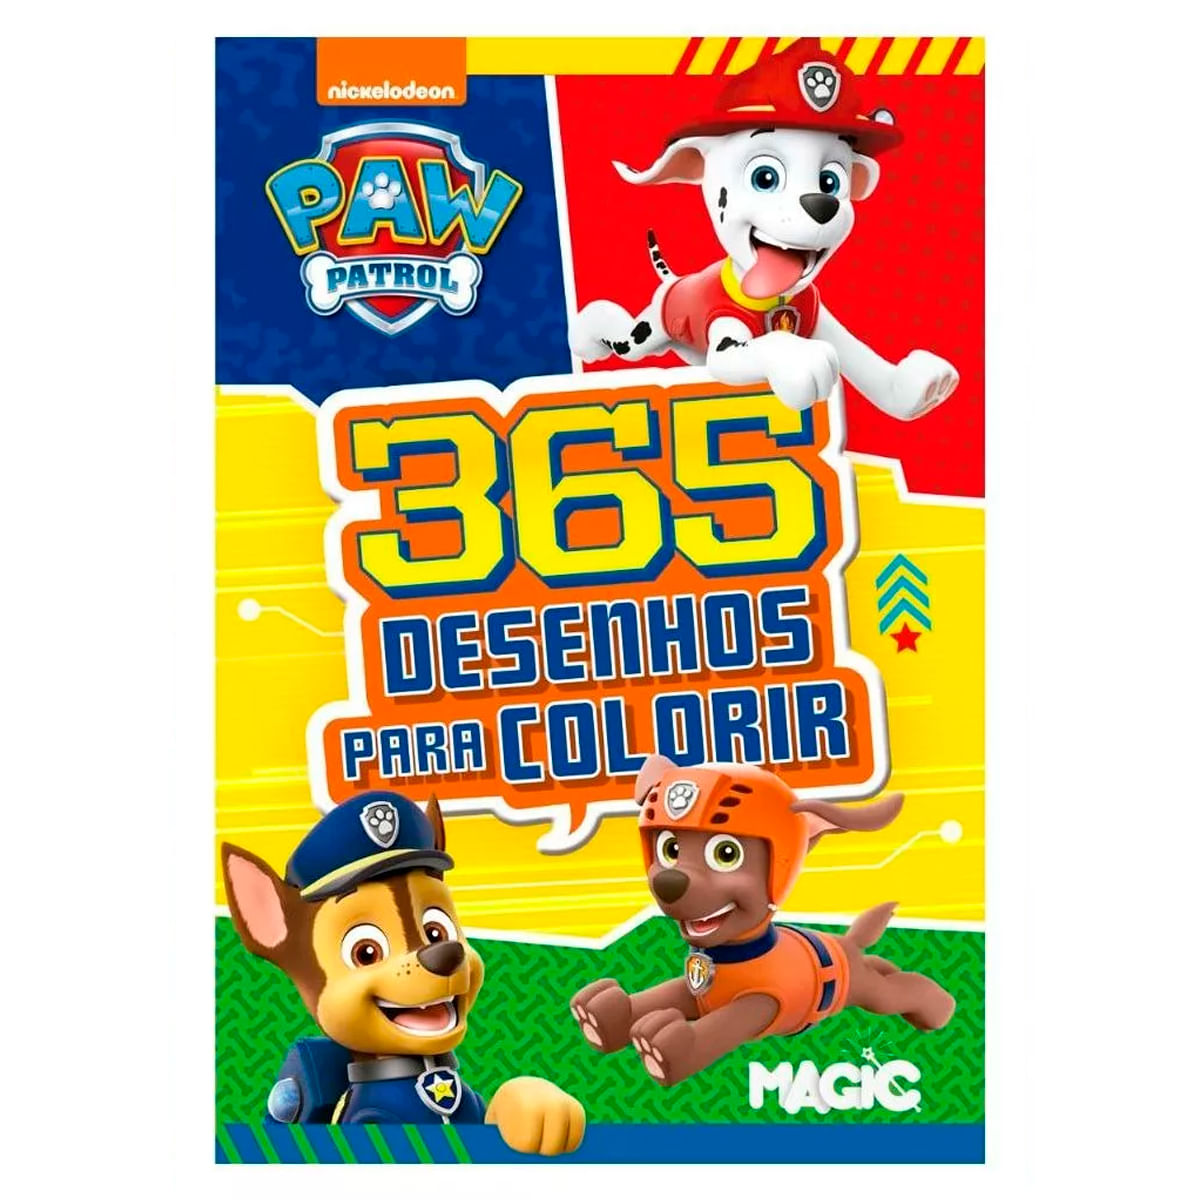 Livro Infantil Colorir Patrulha Canina com Canetinha e Adesivo - Magic Kids